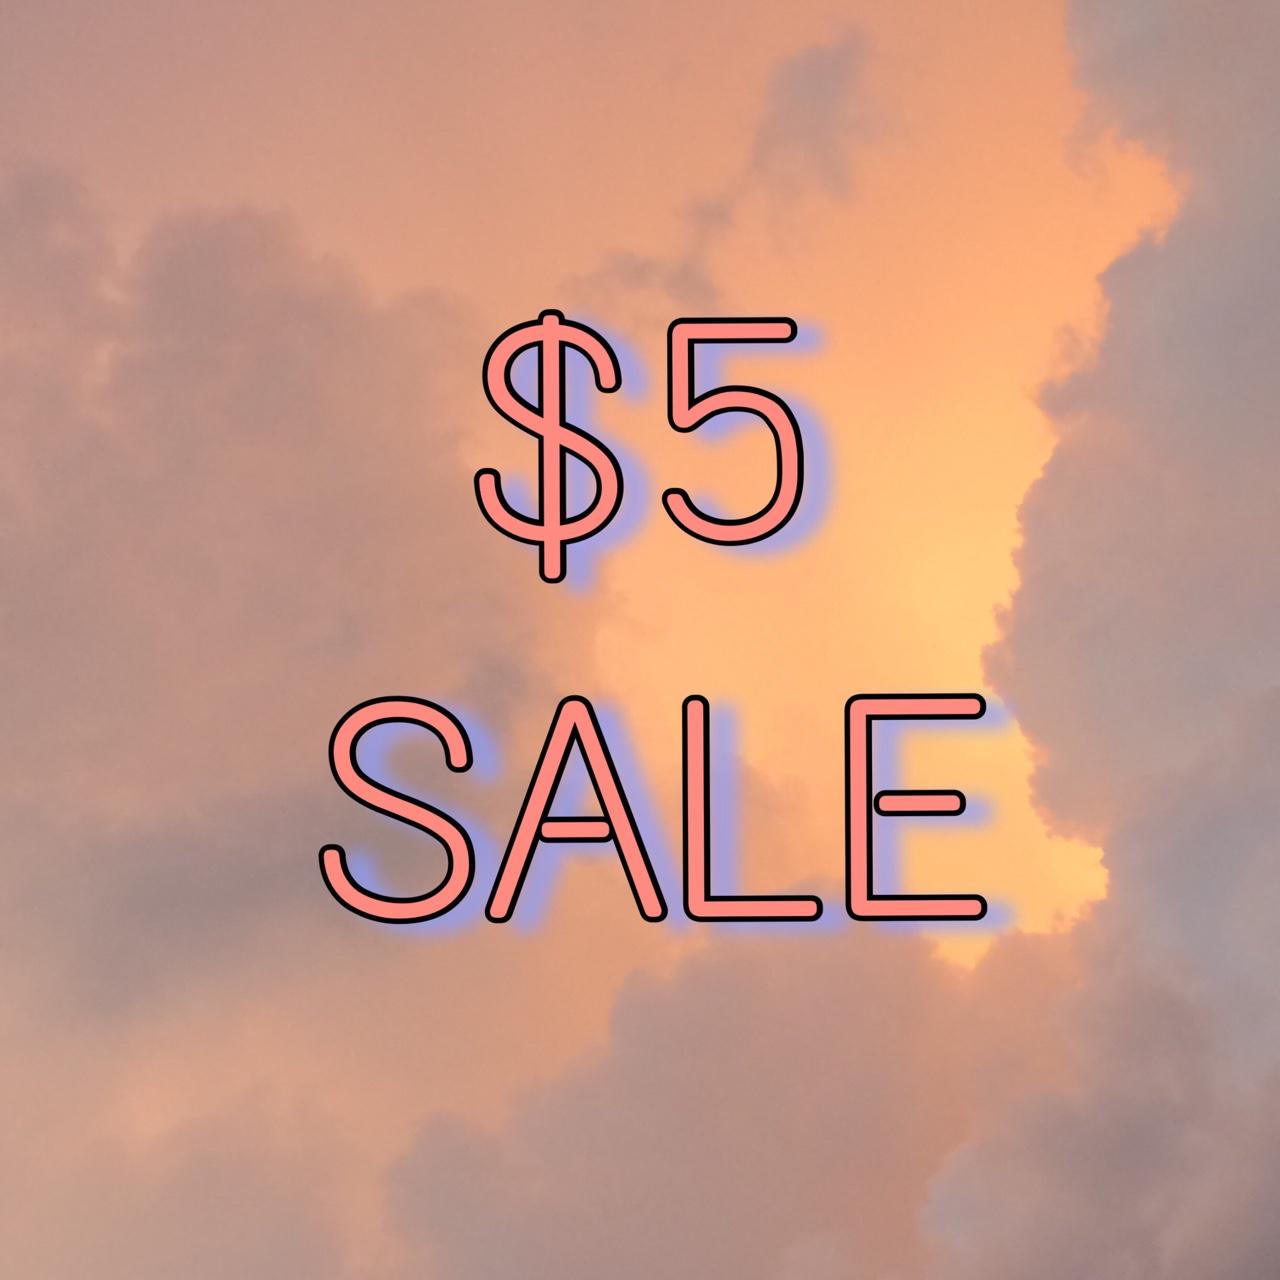 Big 5 dollar sale!!!! 5 dollar items will be